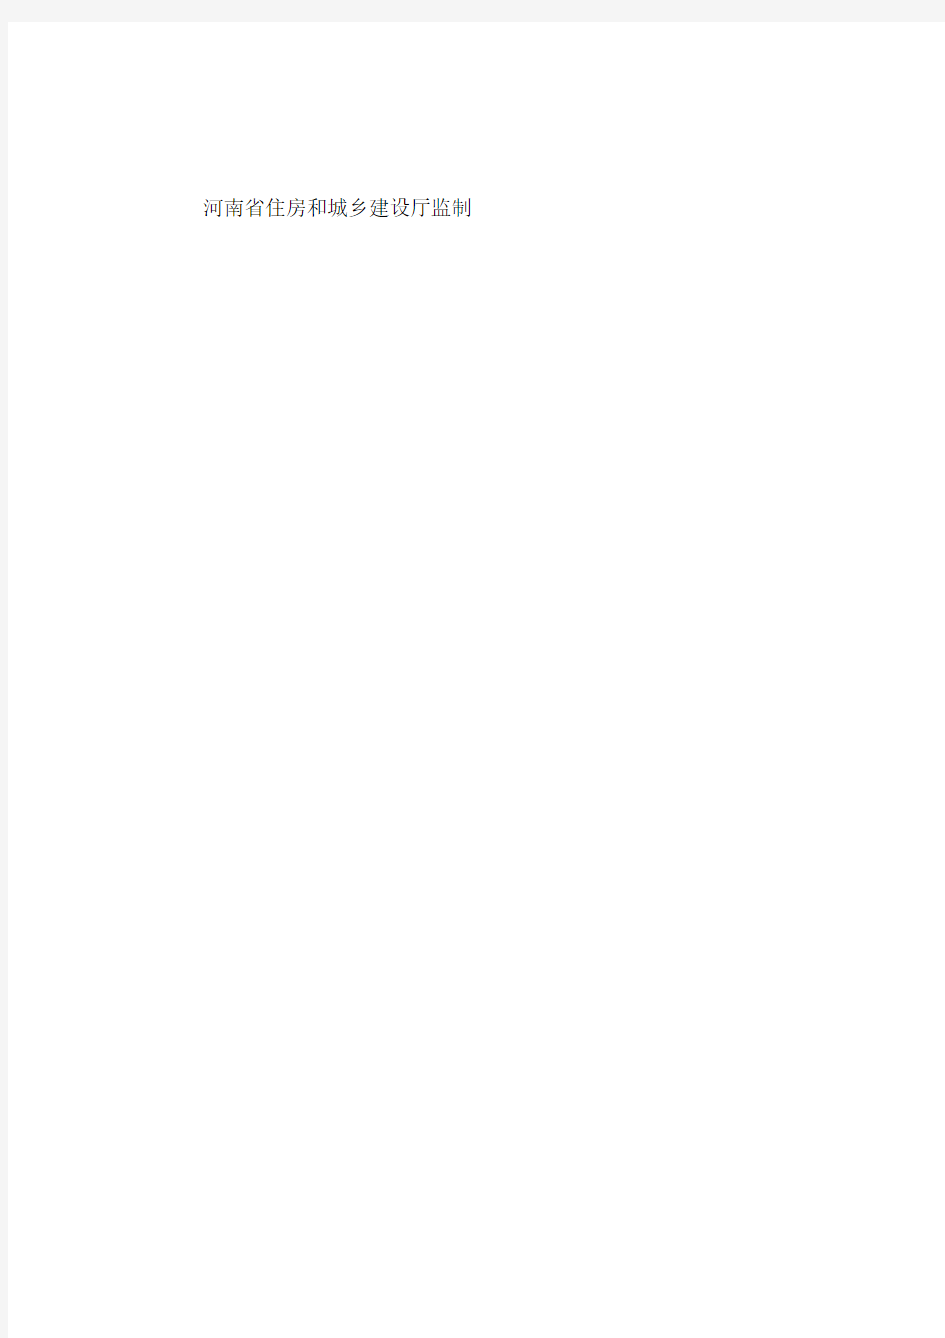 河南省建设工程项目安全生产评价表